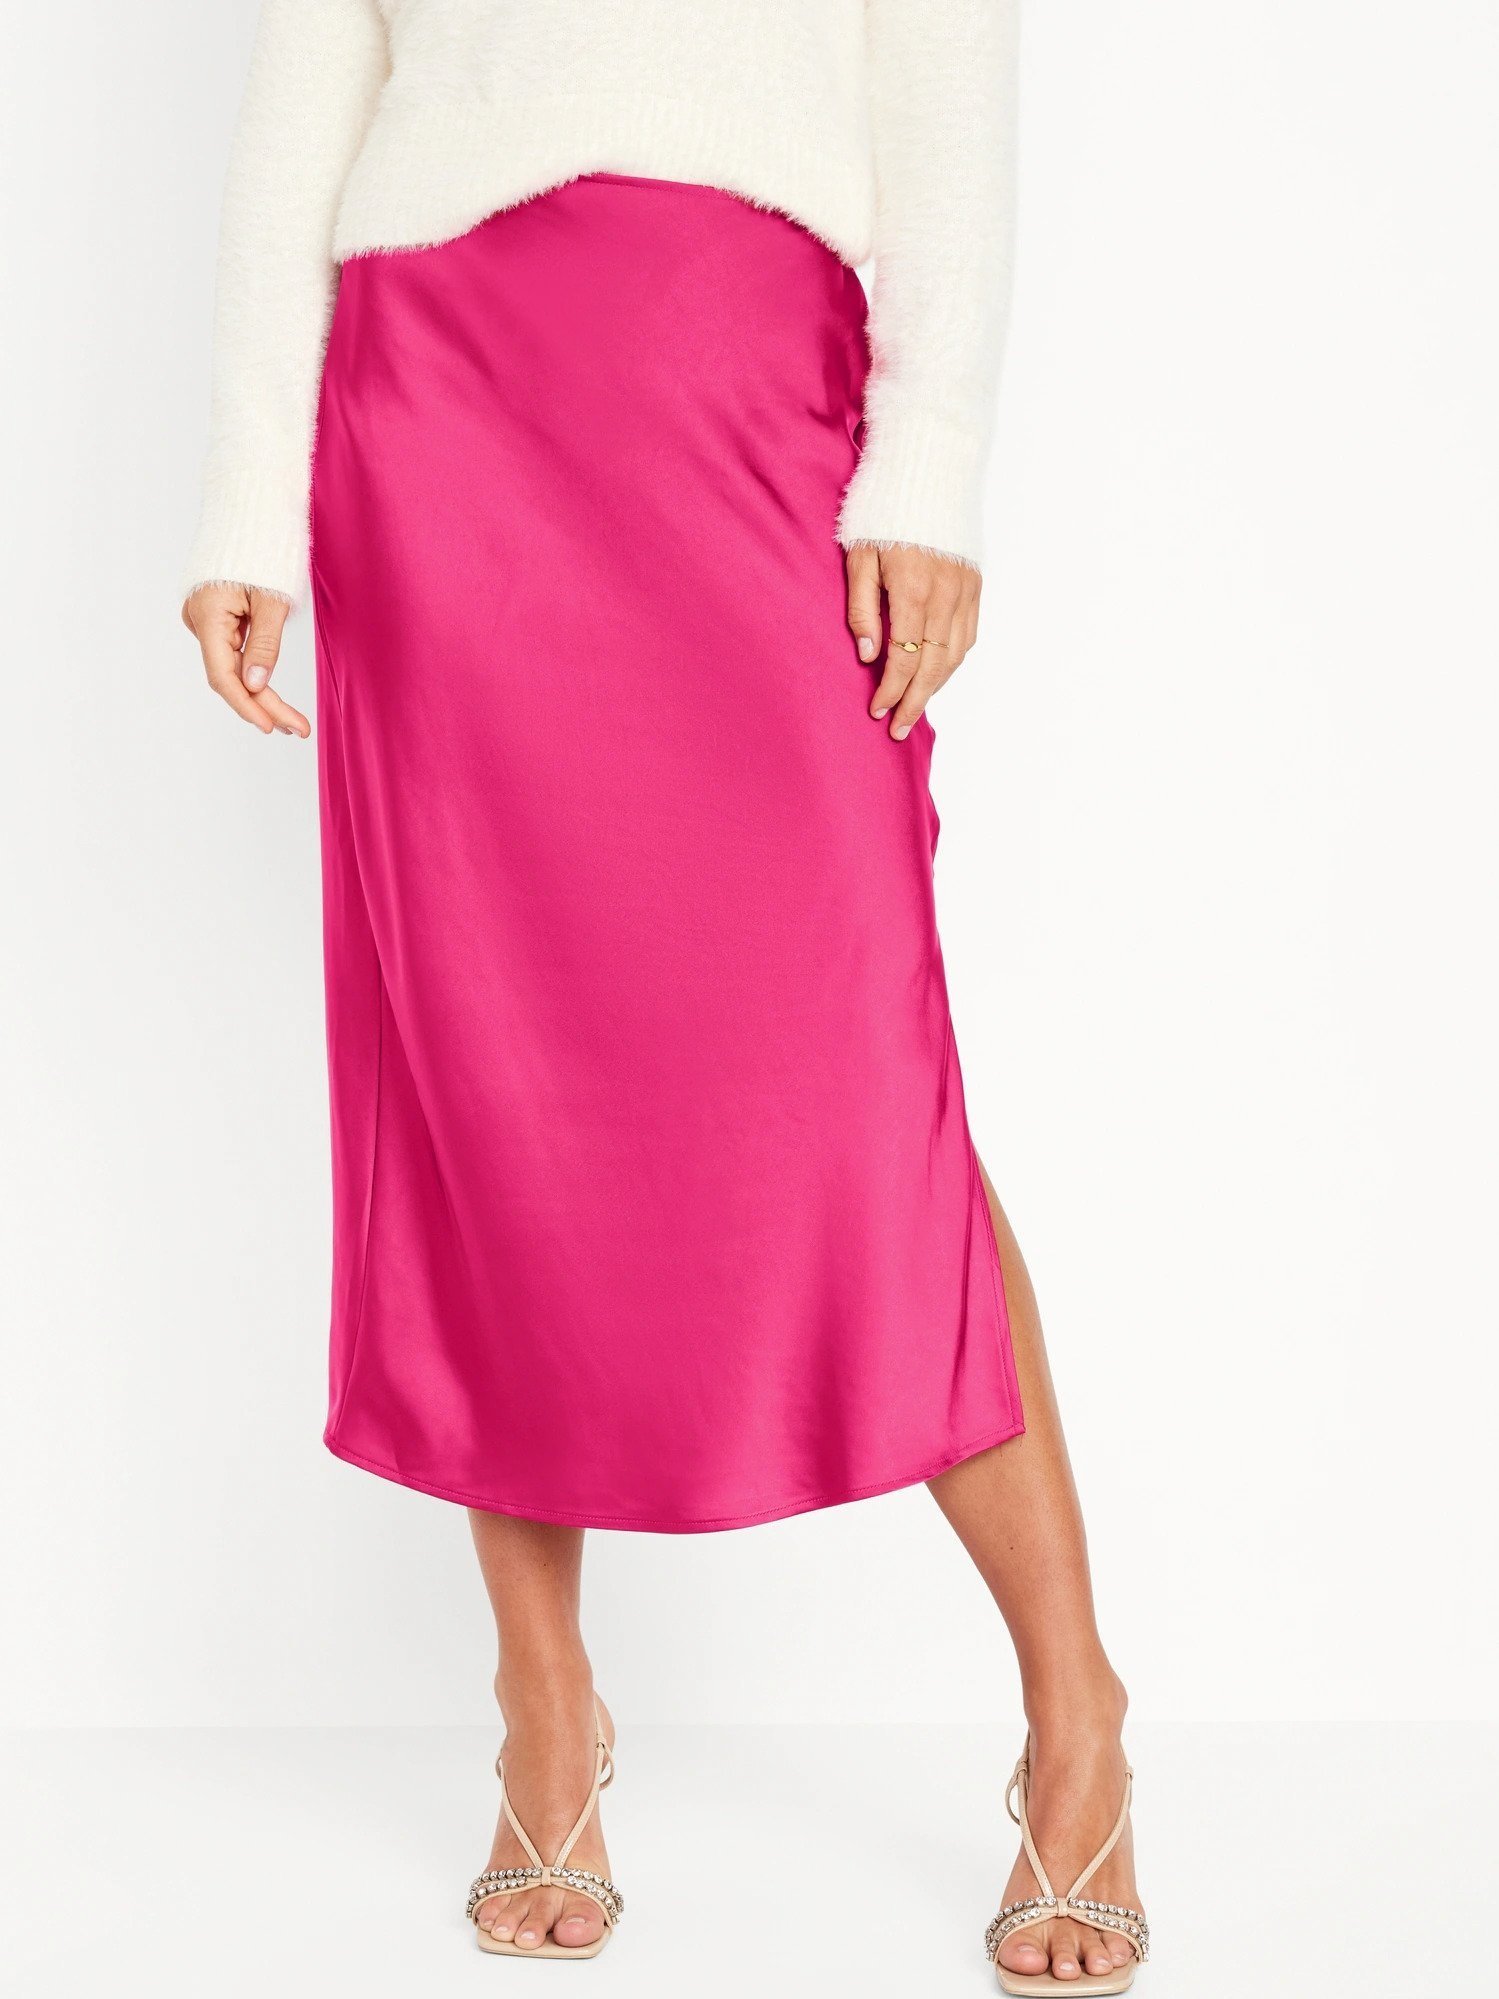    Satin Midi Slip Skirt for Women, P2,250   